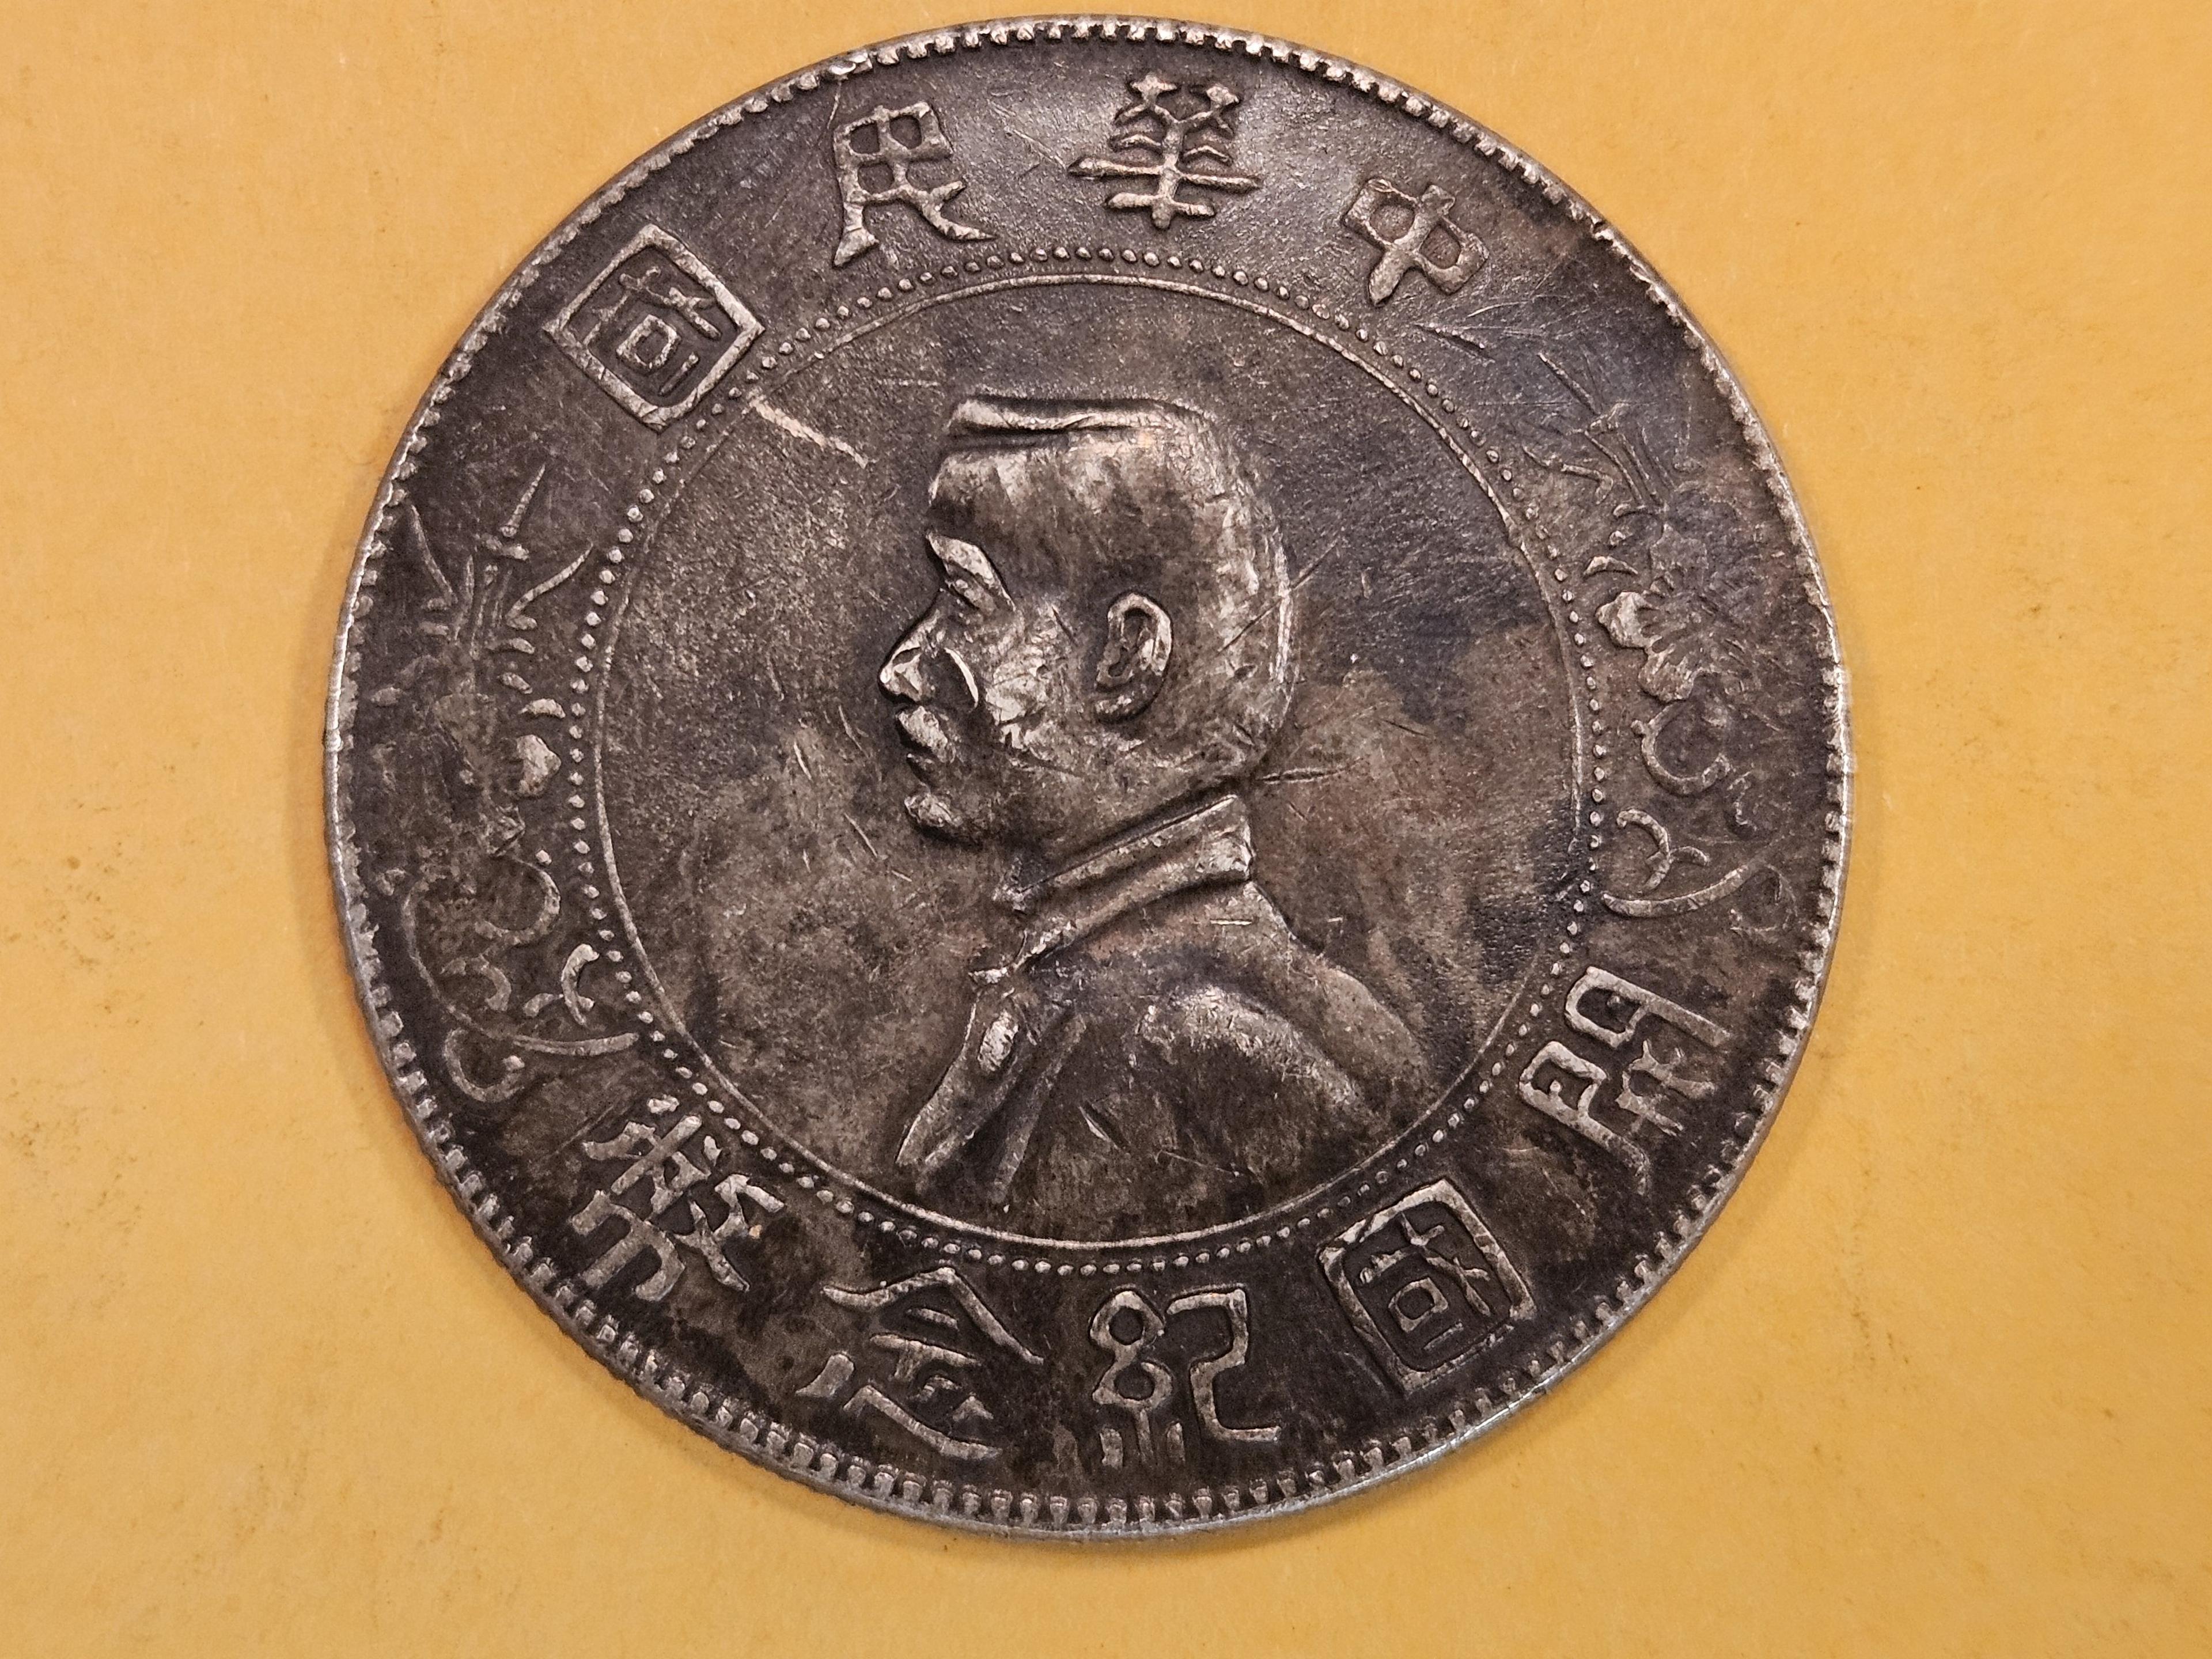 1927 China memento Dollar